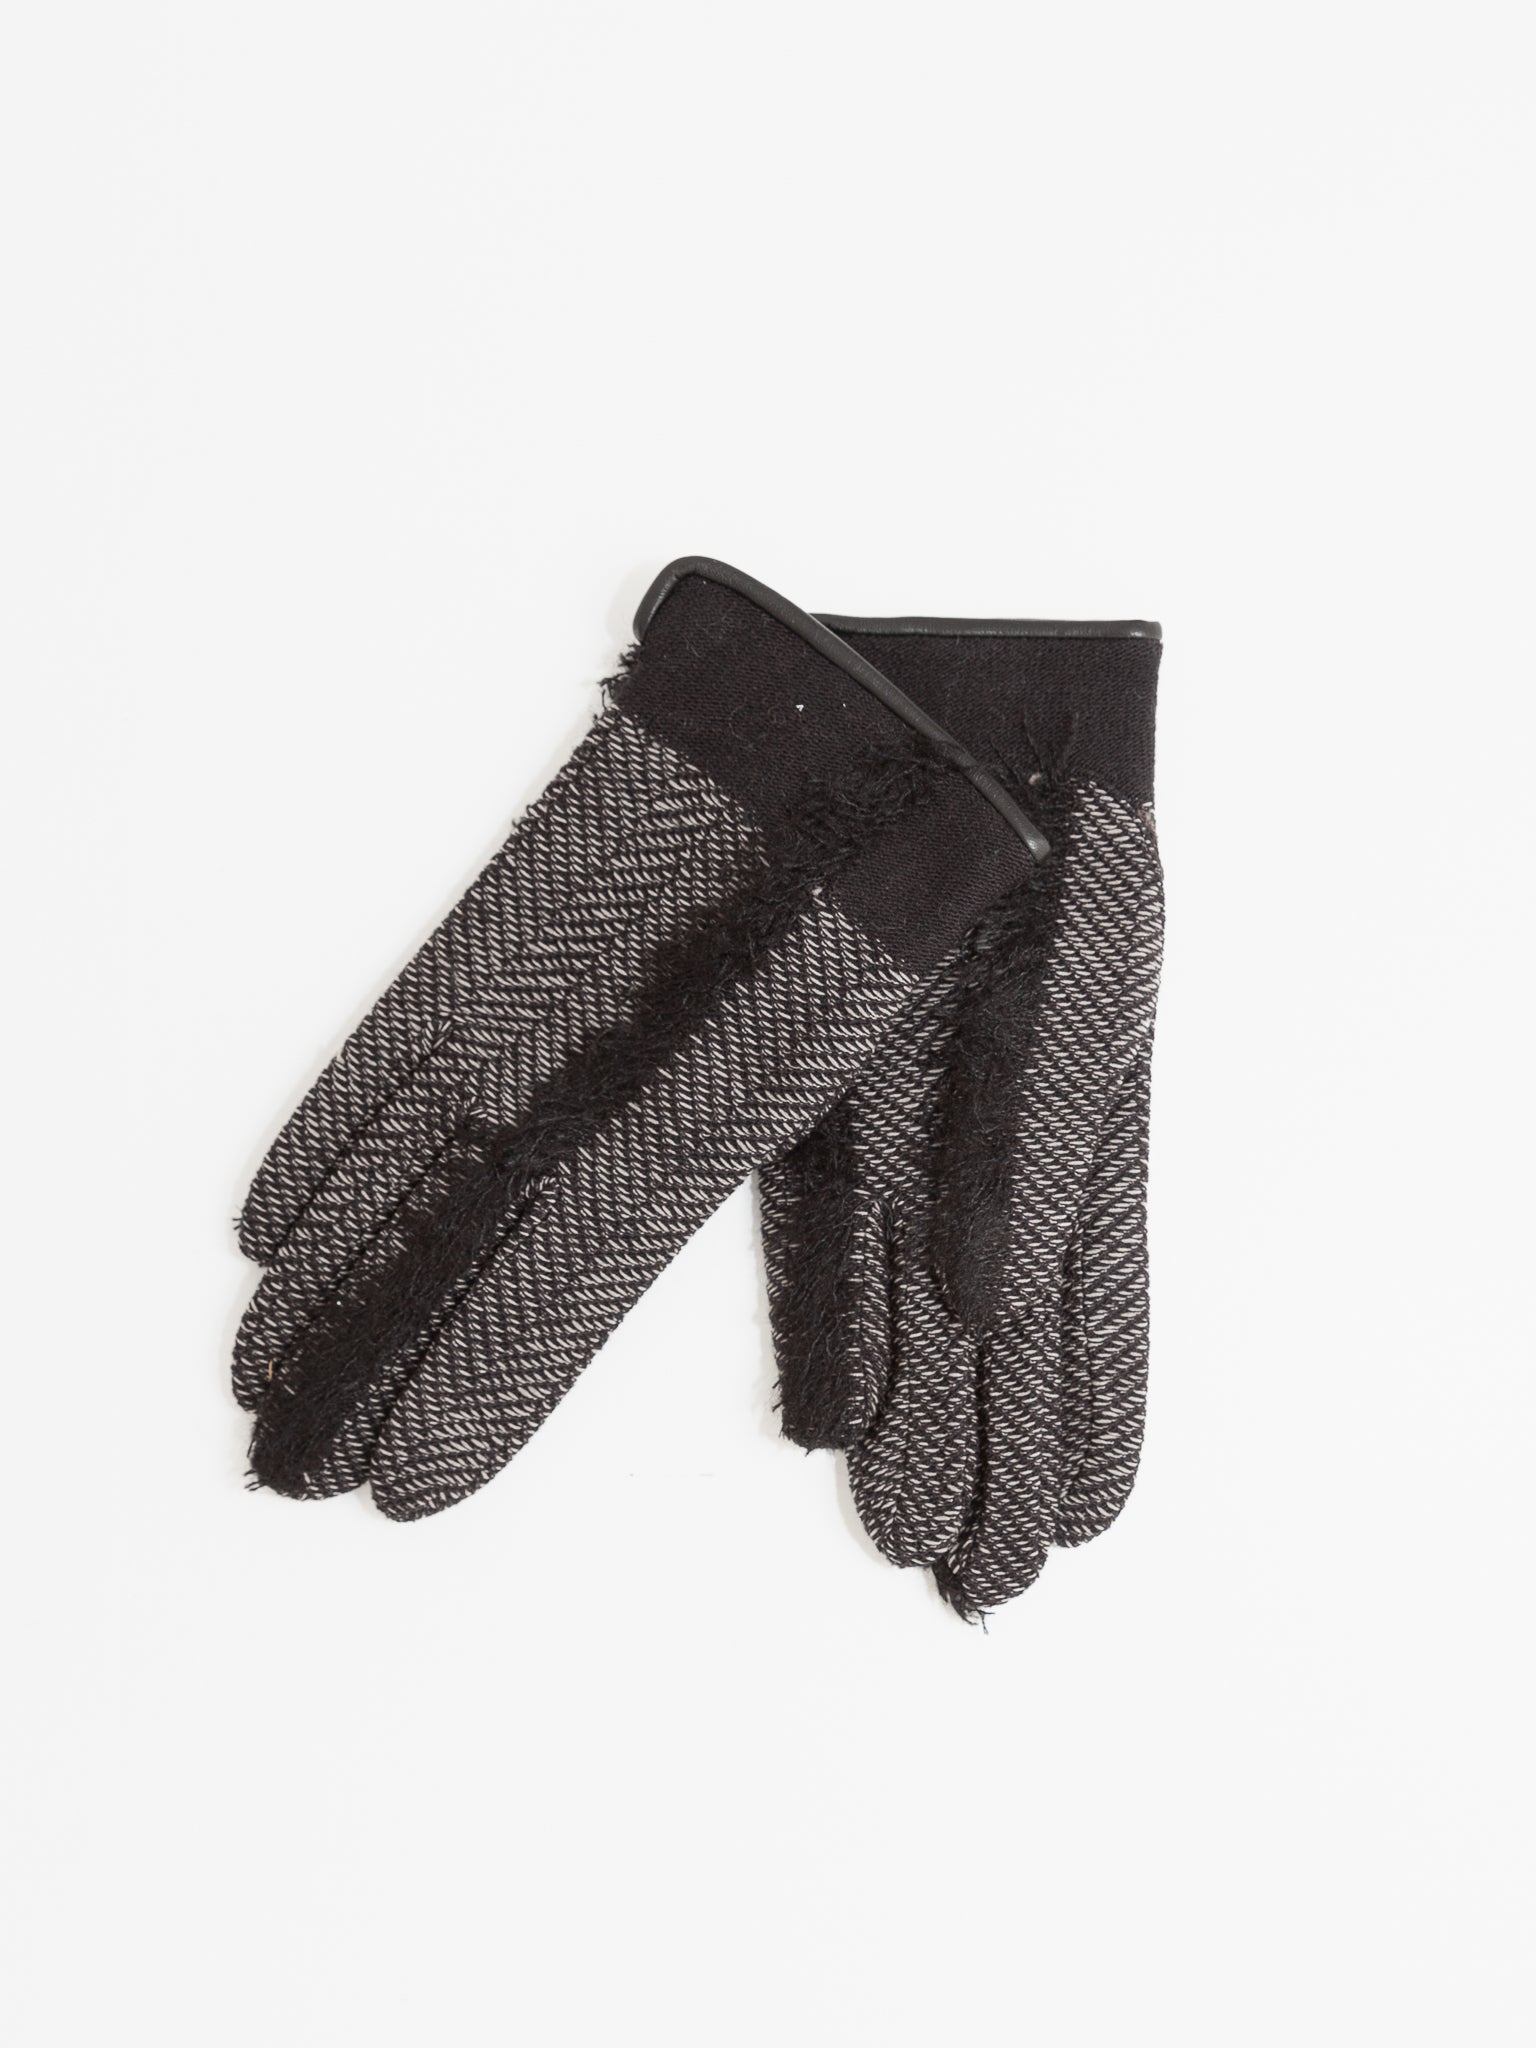 Antipast Fringe Cashmere Gloves, Black - Worthwhile